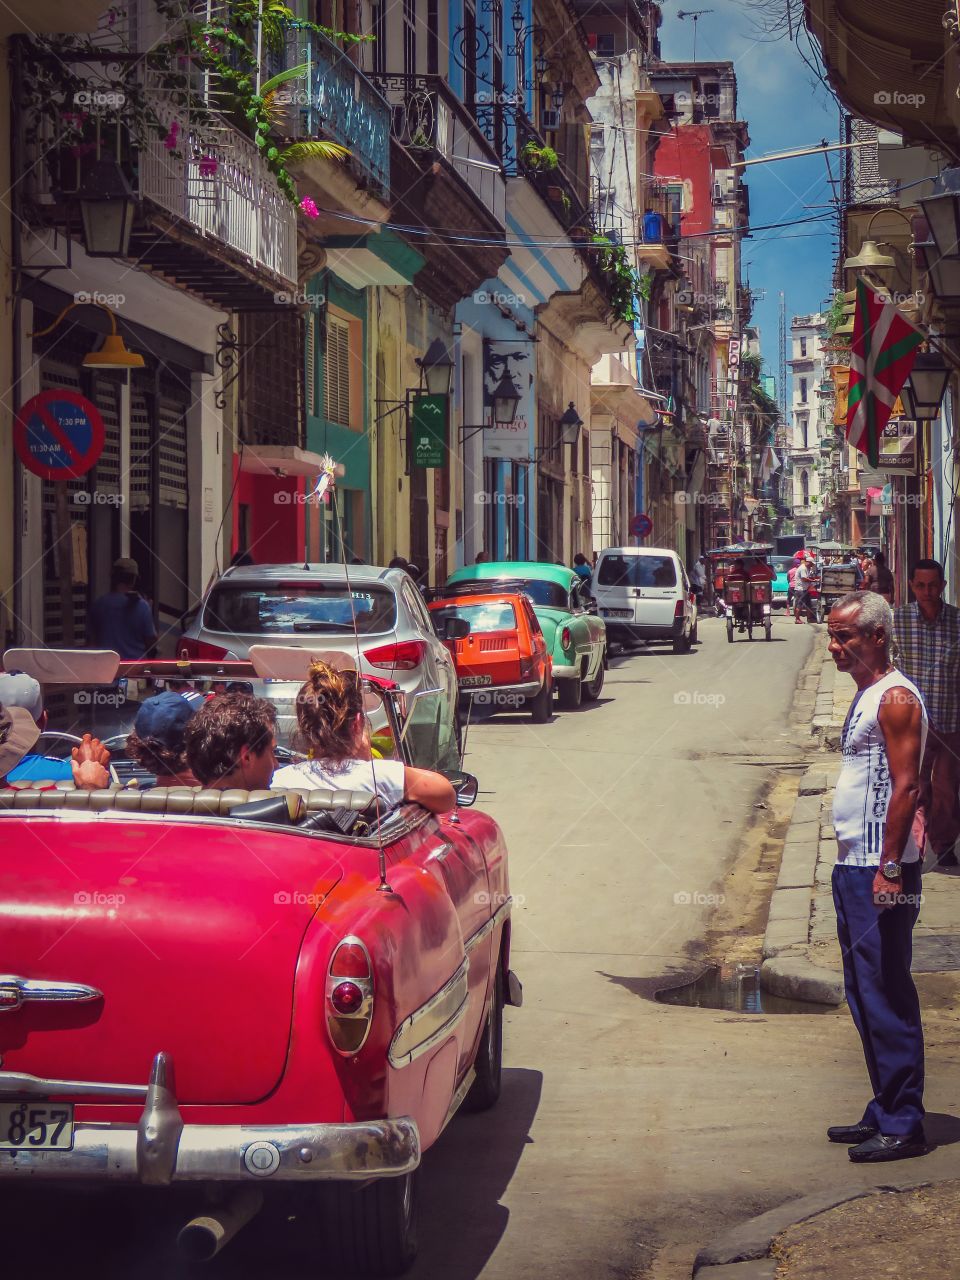 La beleza de La Habana